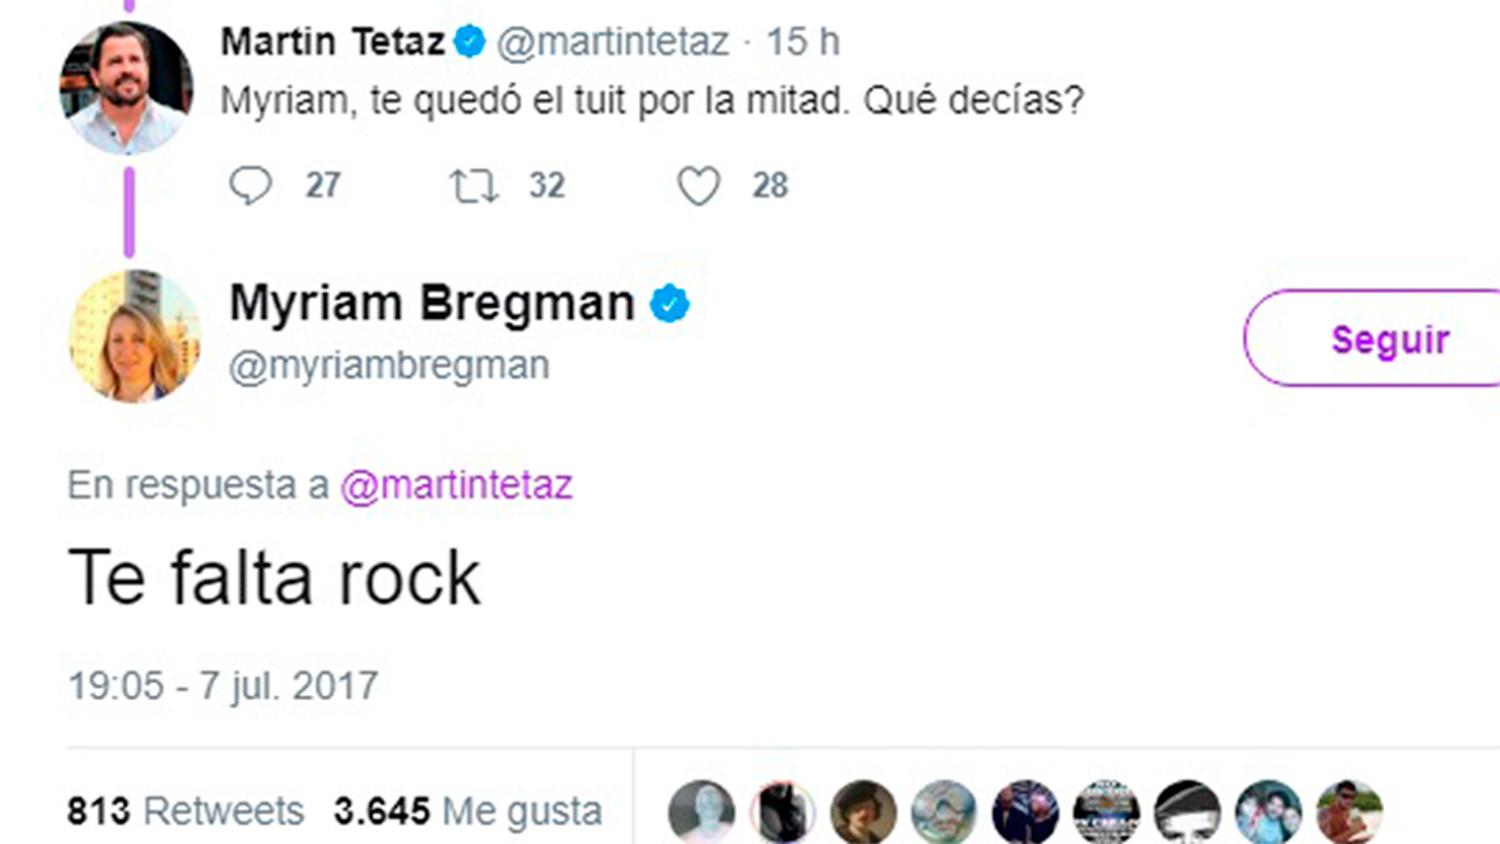 Te falta rock, la campaña de Spotify inspirada en la respuesta de la diputada Myriam Bregman 